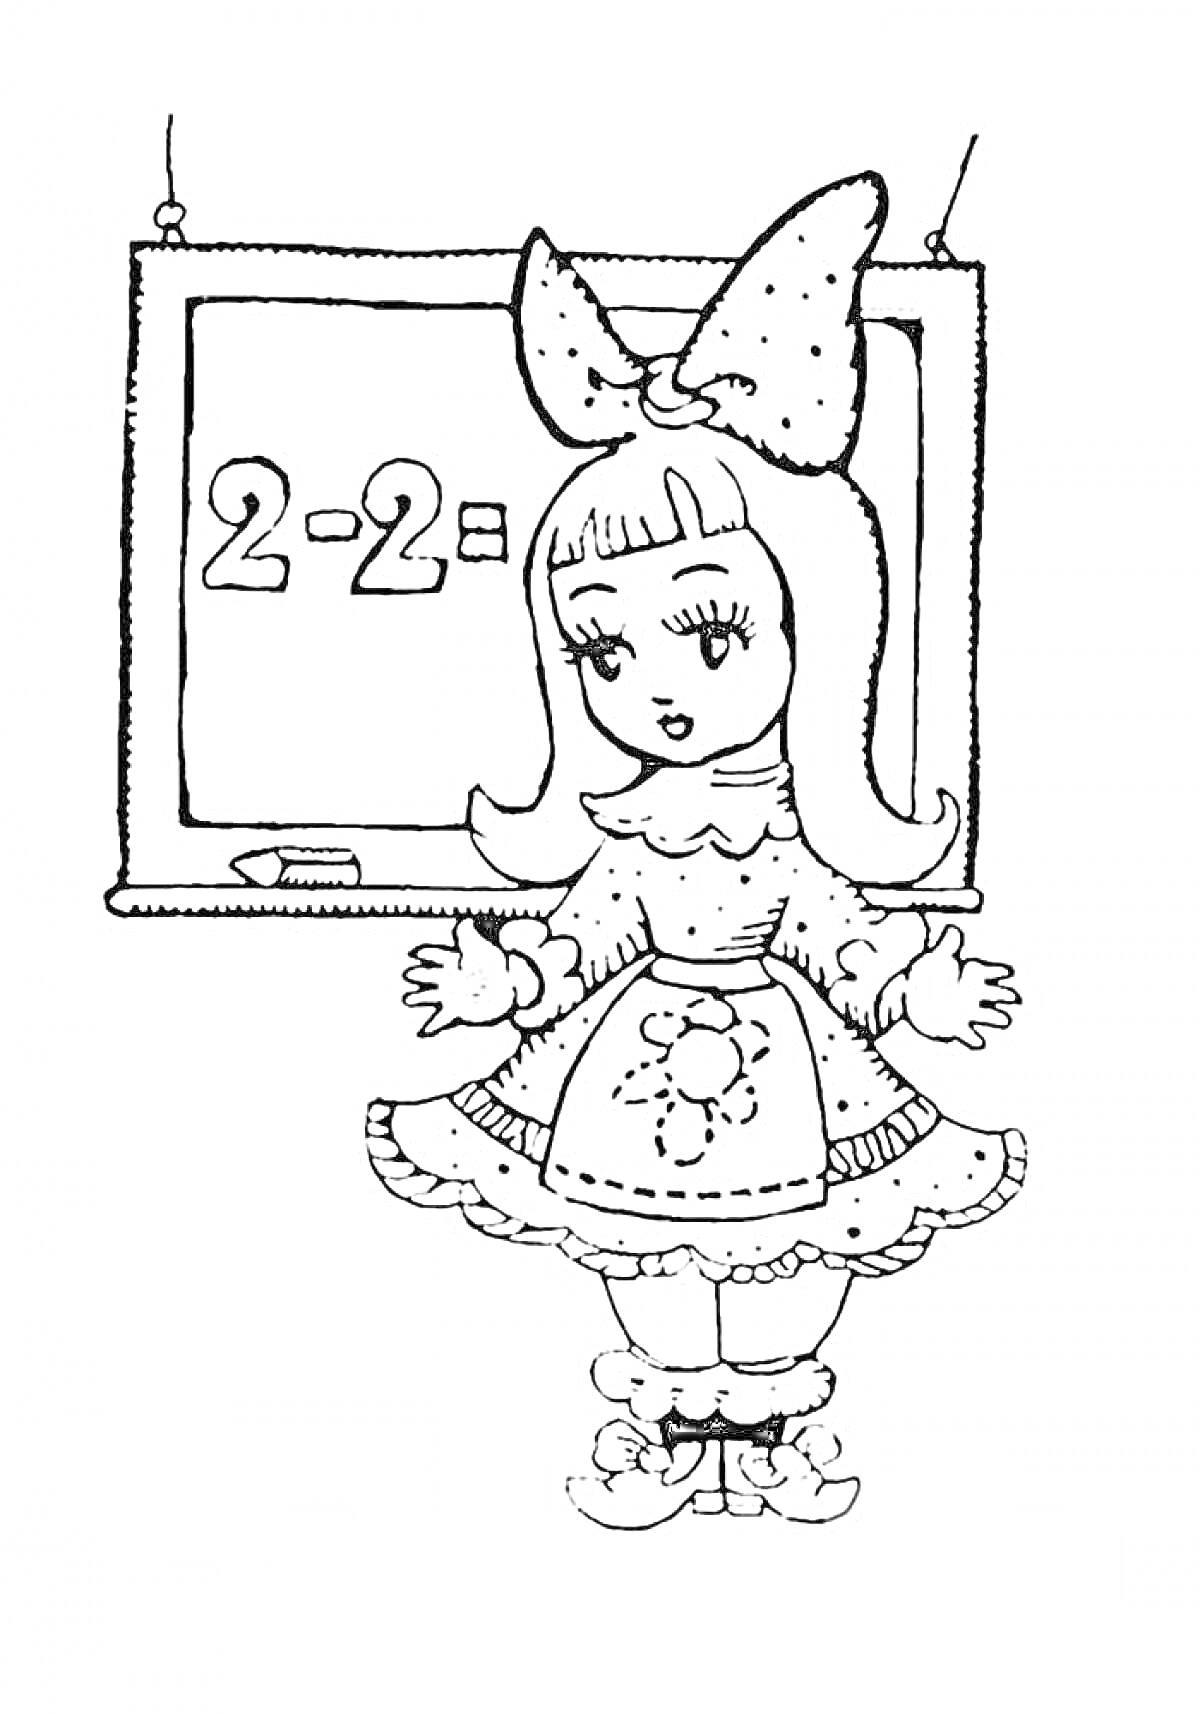 Раскраска Девочка с бантом на голове у школьной доски с математическим примером